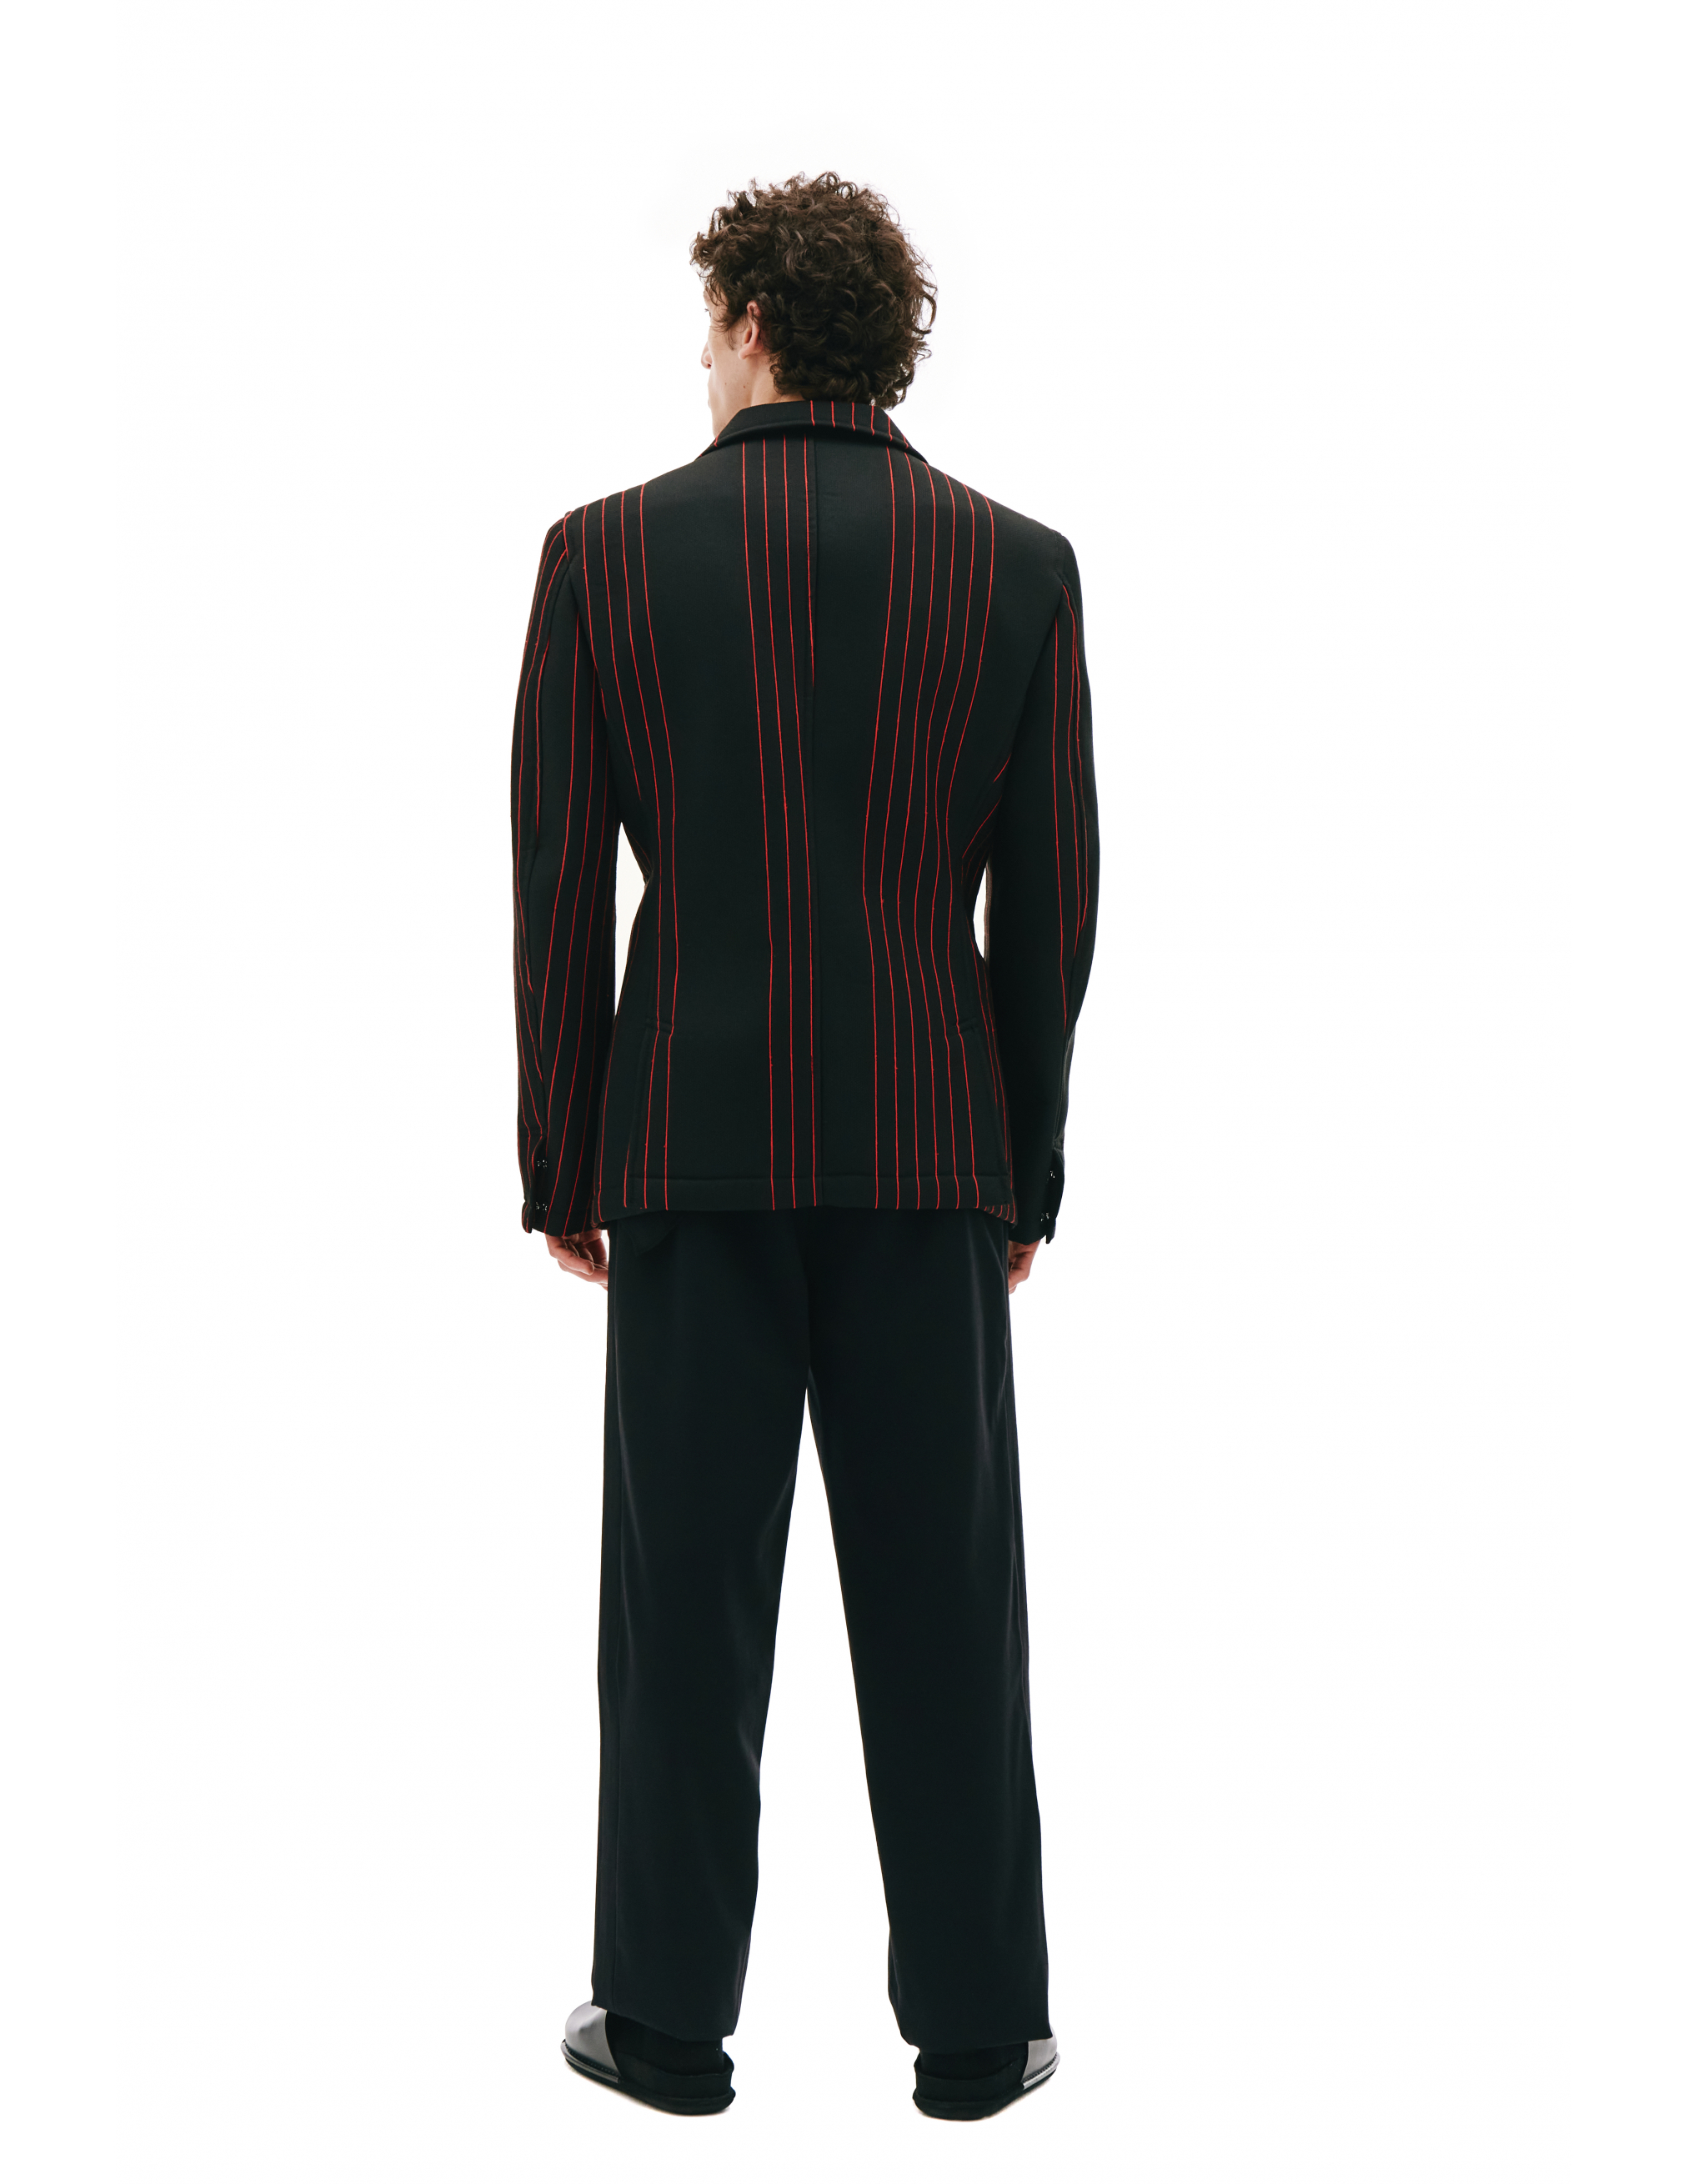 Черный пиджак в красную полоску - Comme des Garcons Homme plus PG-J058-051-1 Фото 3